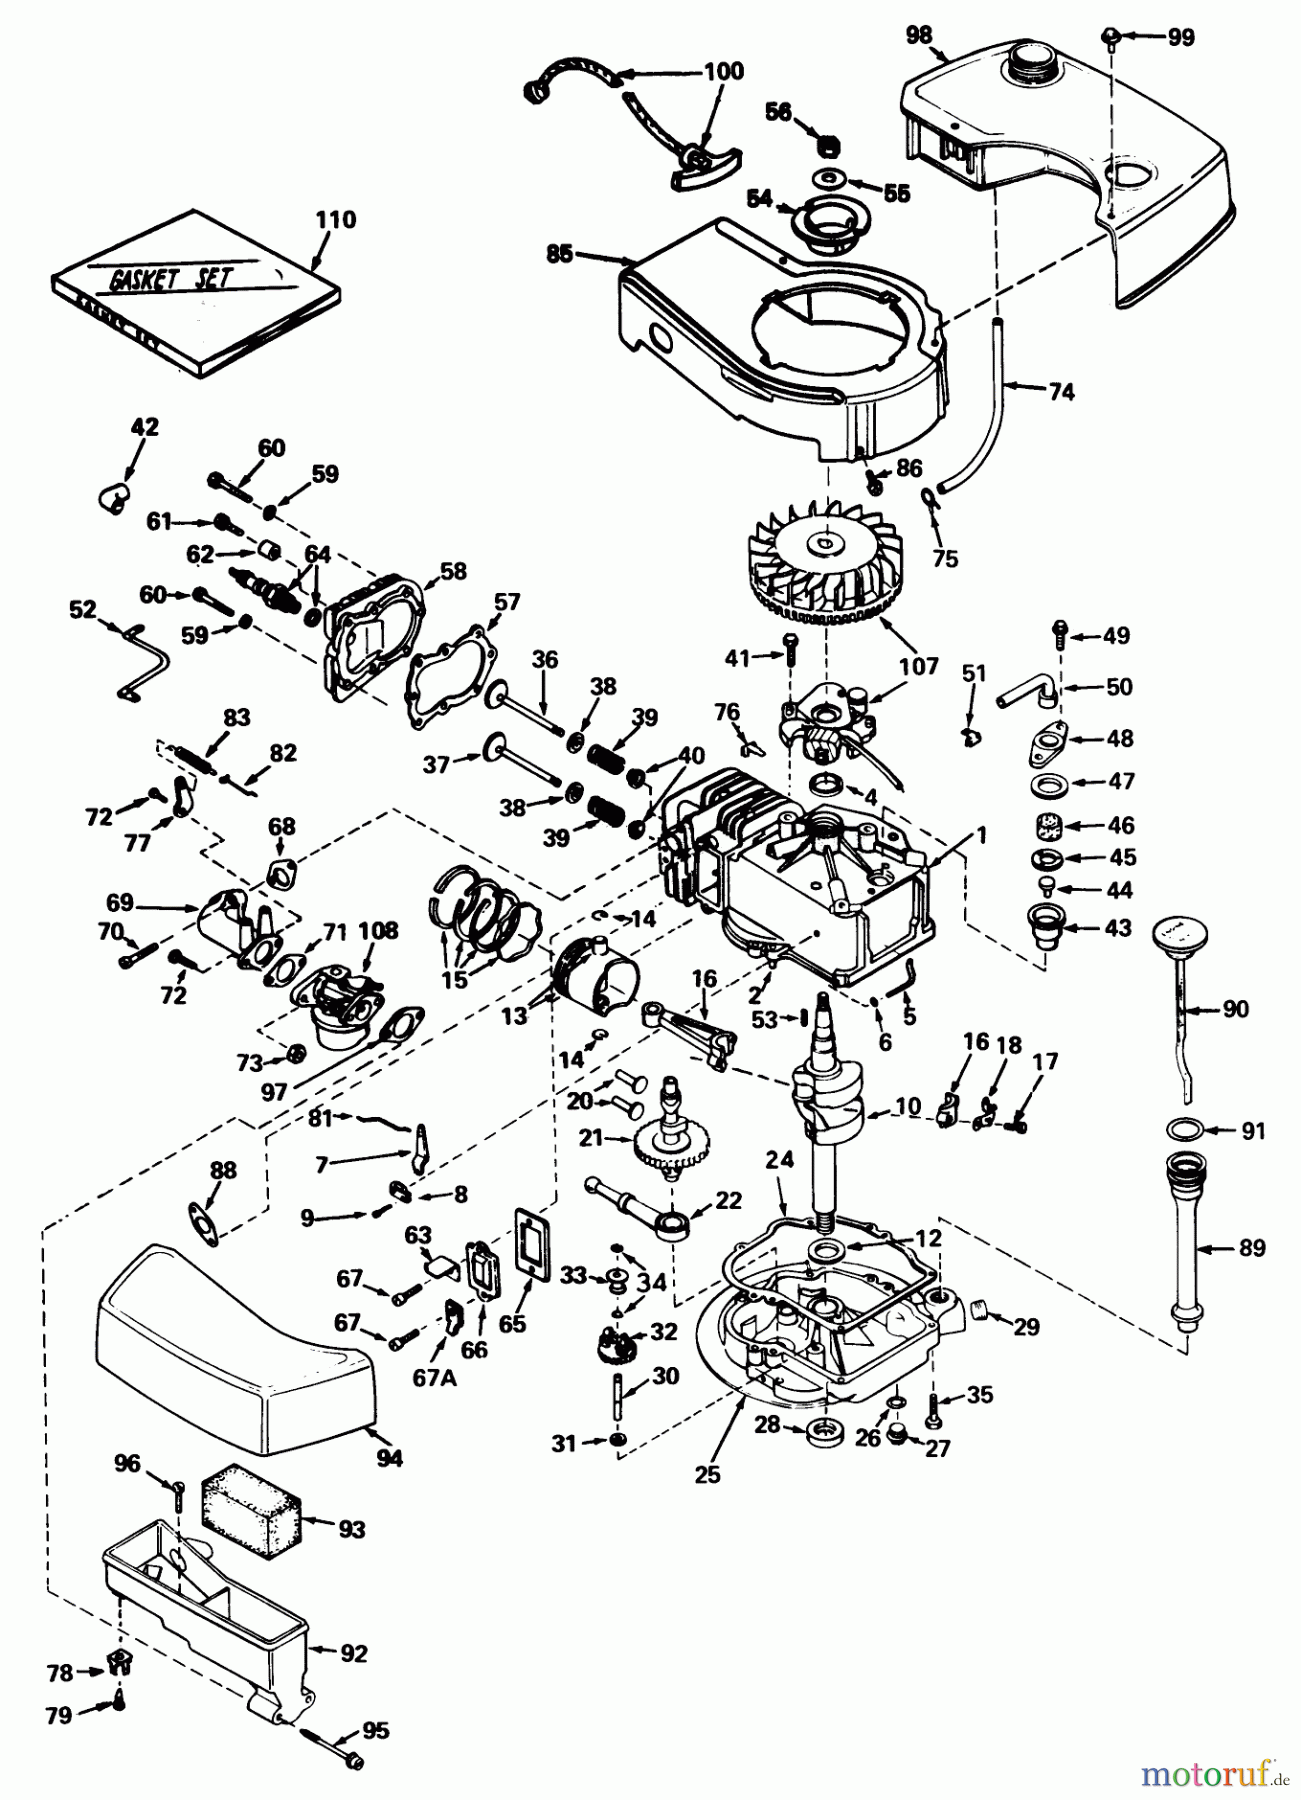  Toro Neu Mowers, Walk-Behind Seite 1 20440 - Toro Lawnmower, 1974 (4000001-4999999) ENGINE MODEL NO. TNT 120-12001 (MOWER MODEL NO. 20660)